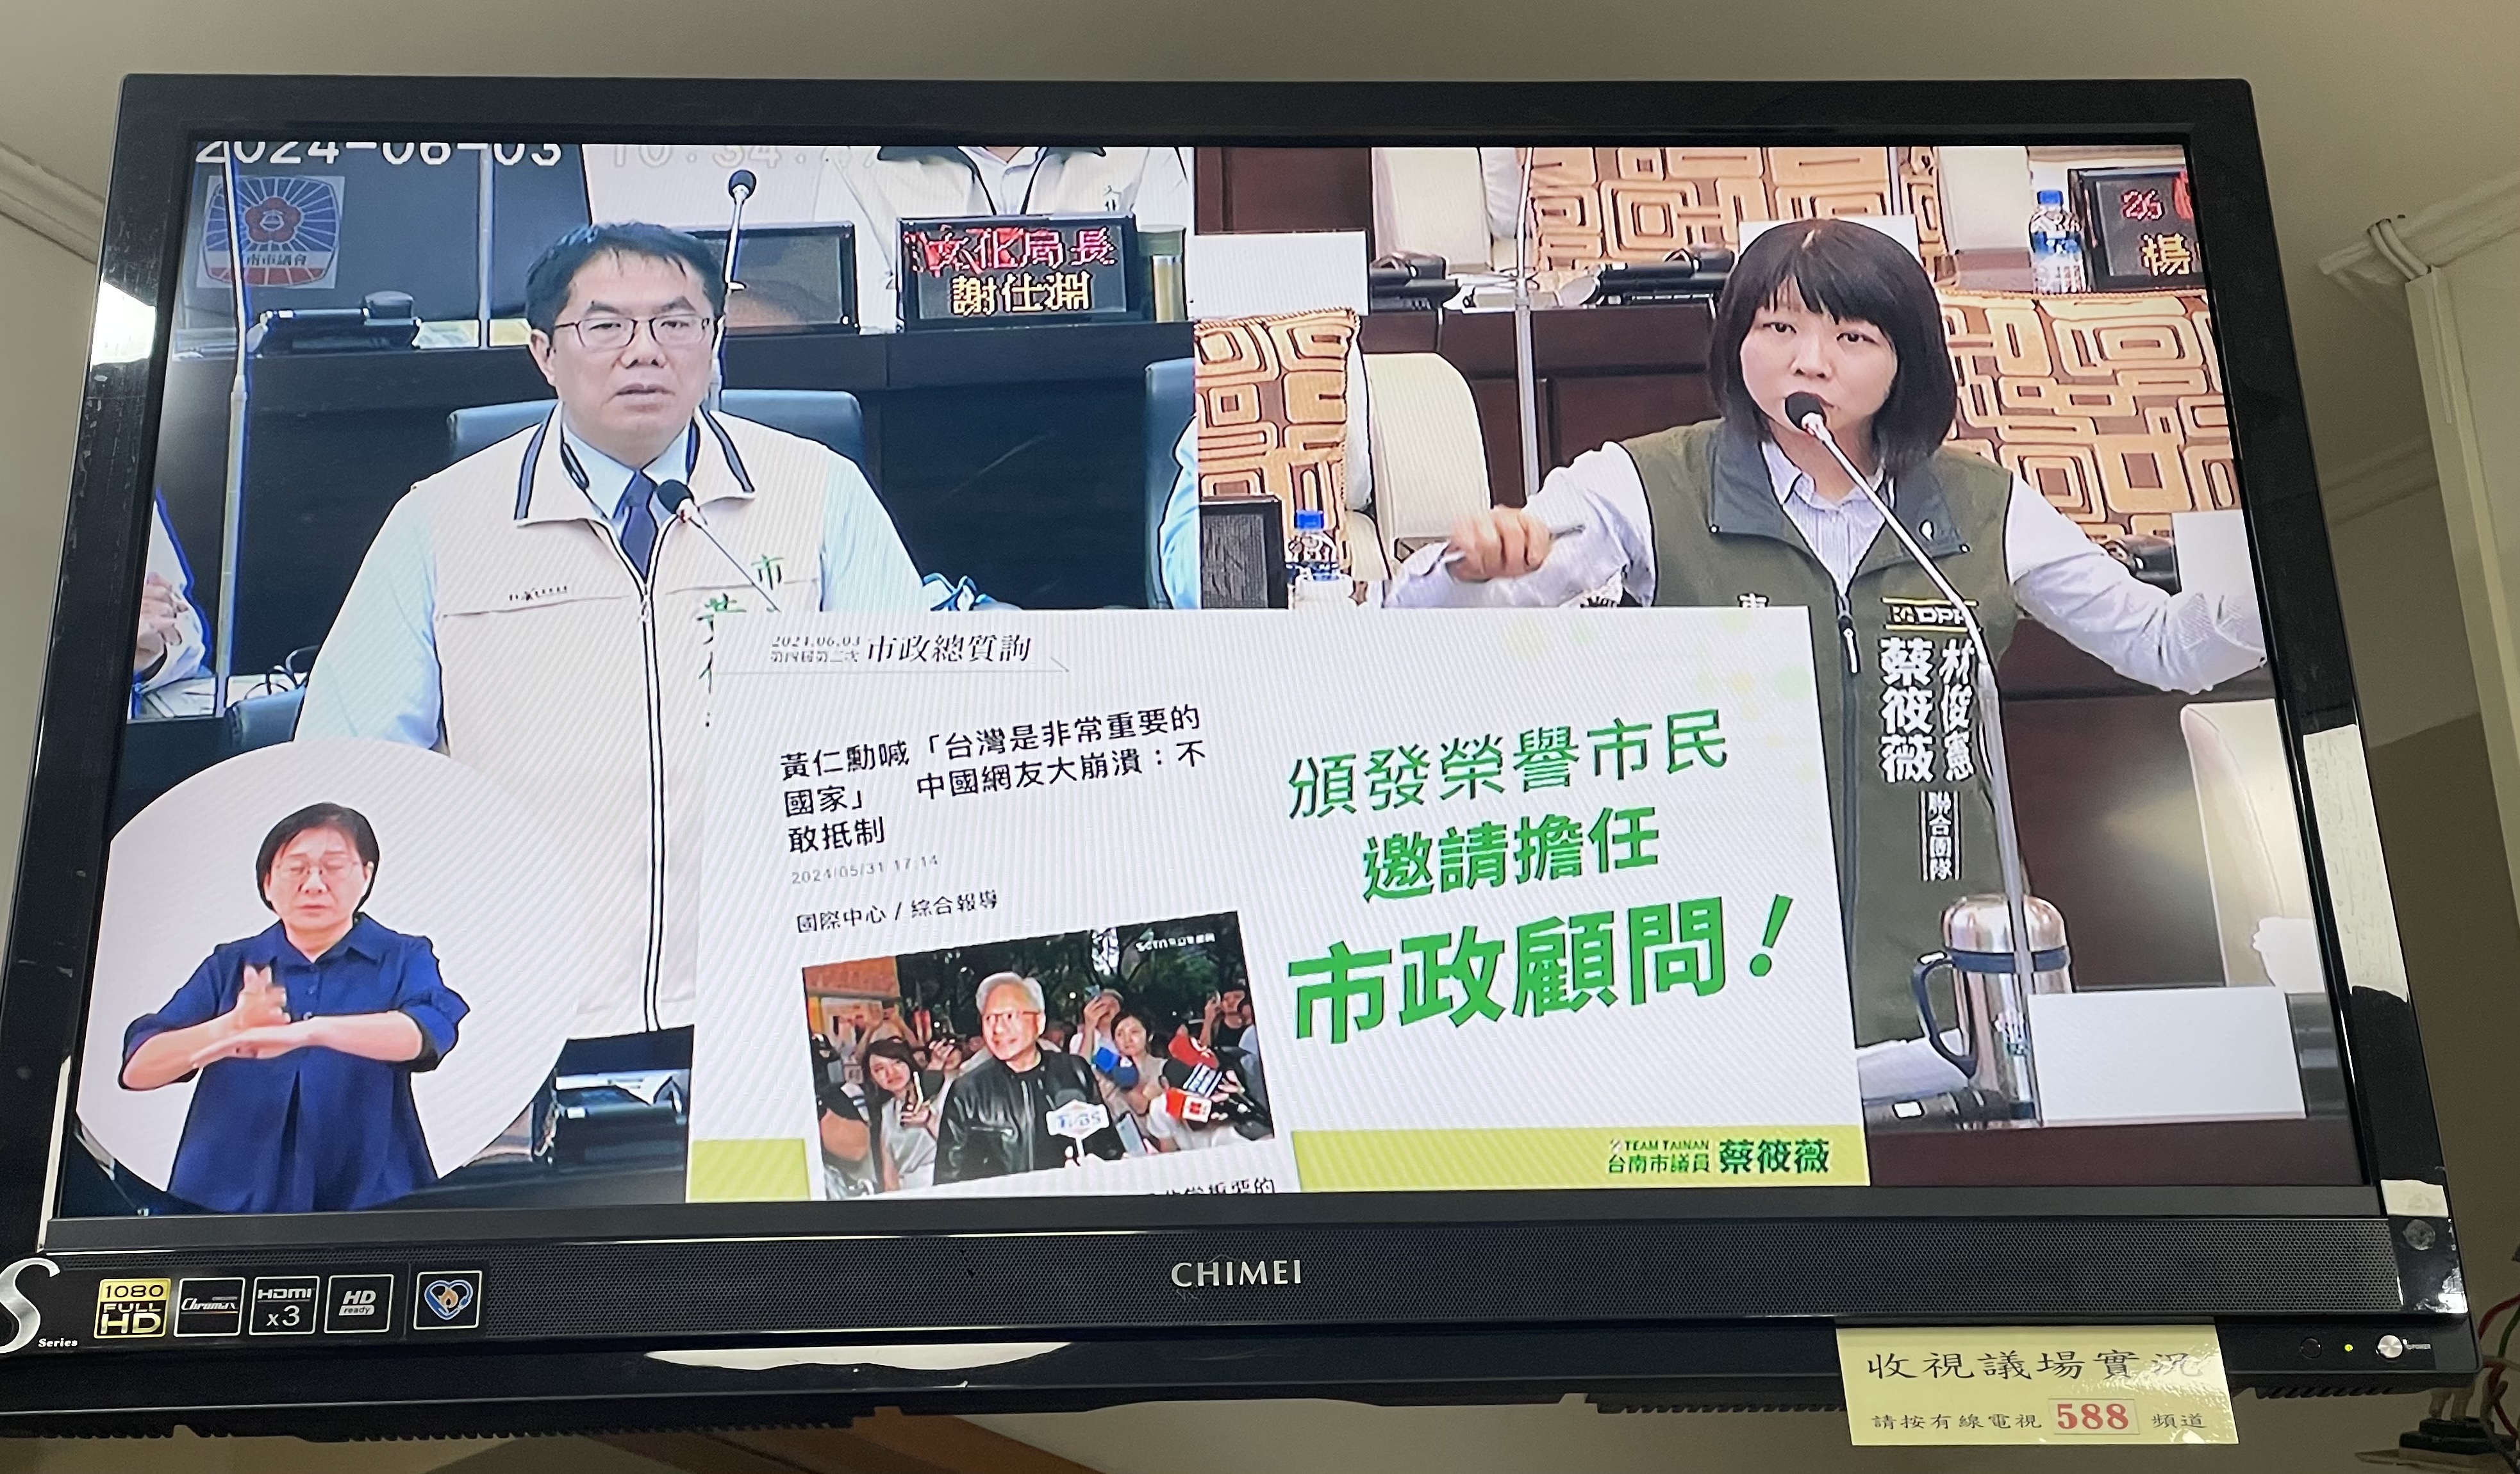 [新聞] 輝達黃仁勳來自台南 議員籲頒榮譽市民、任市政顧問